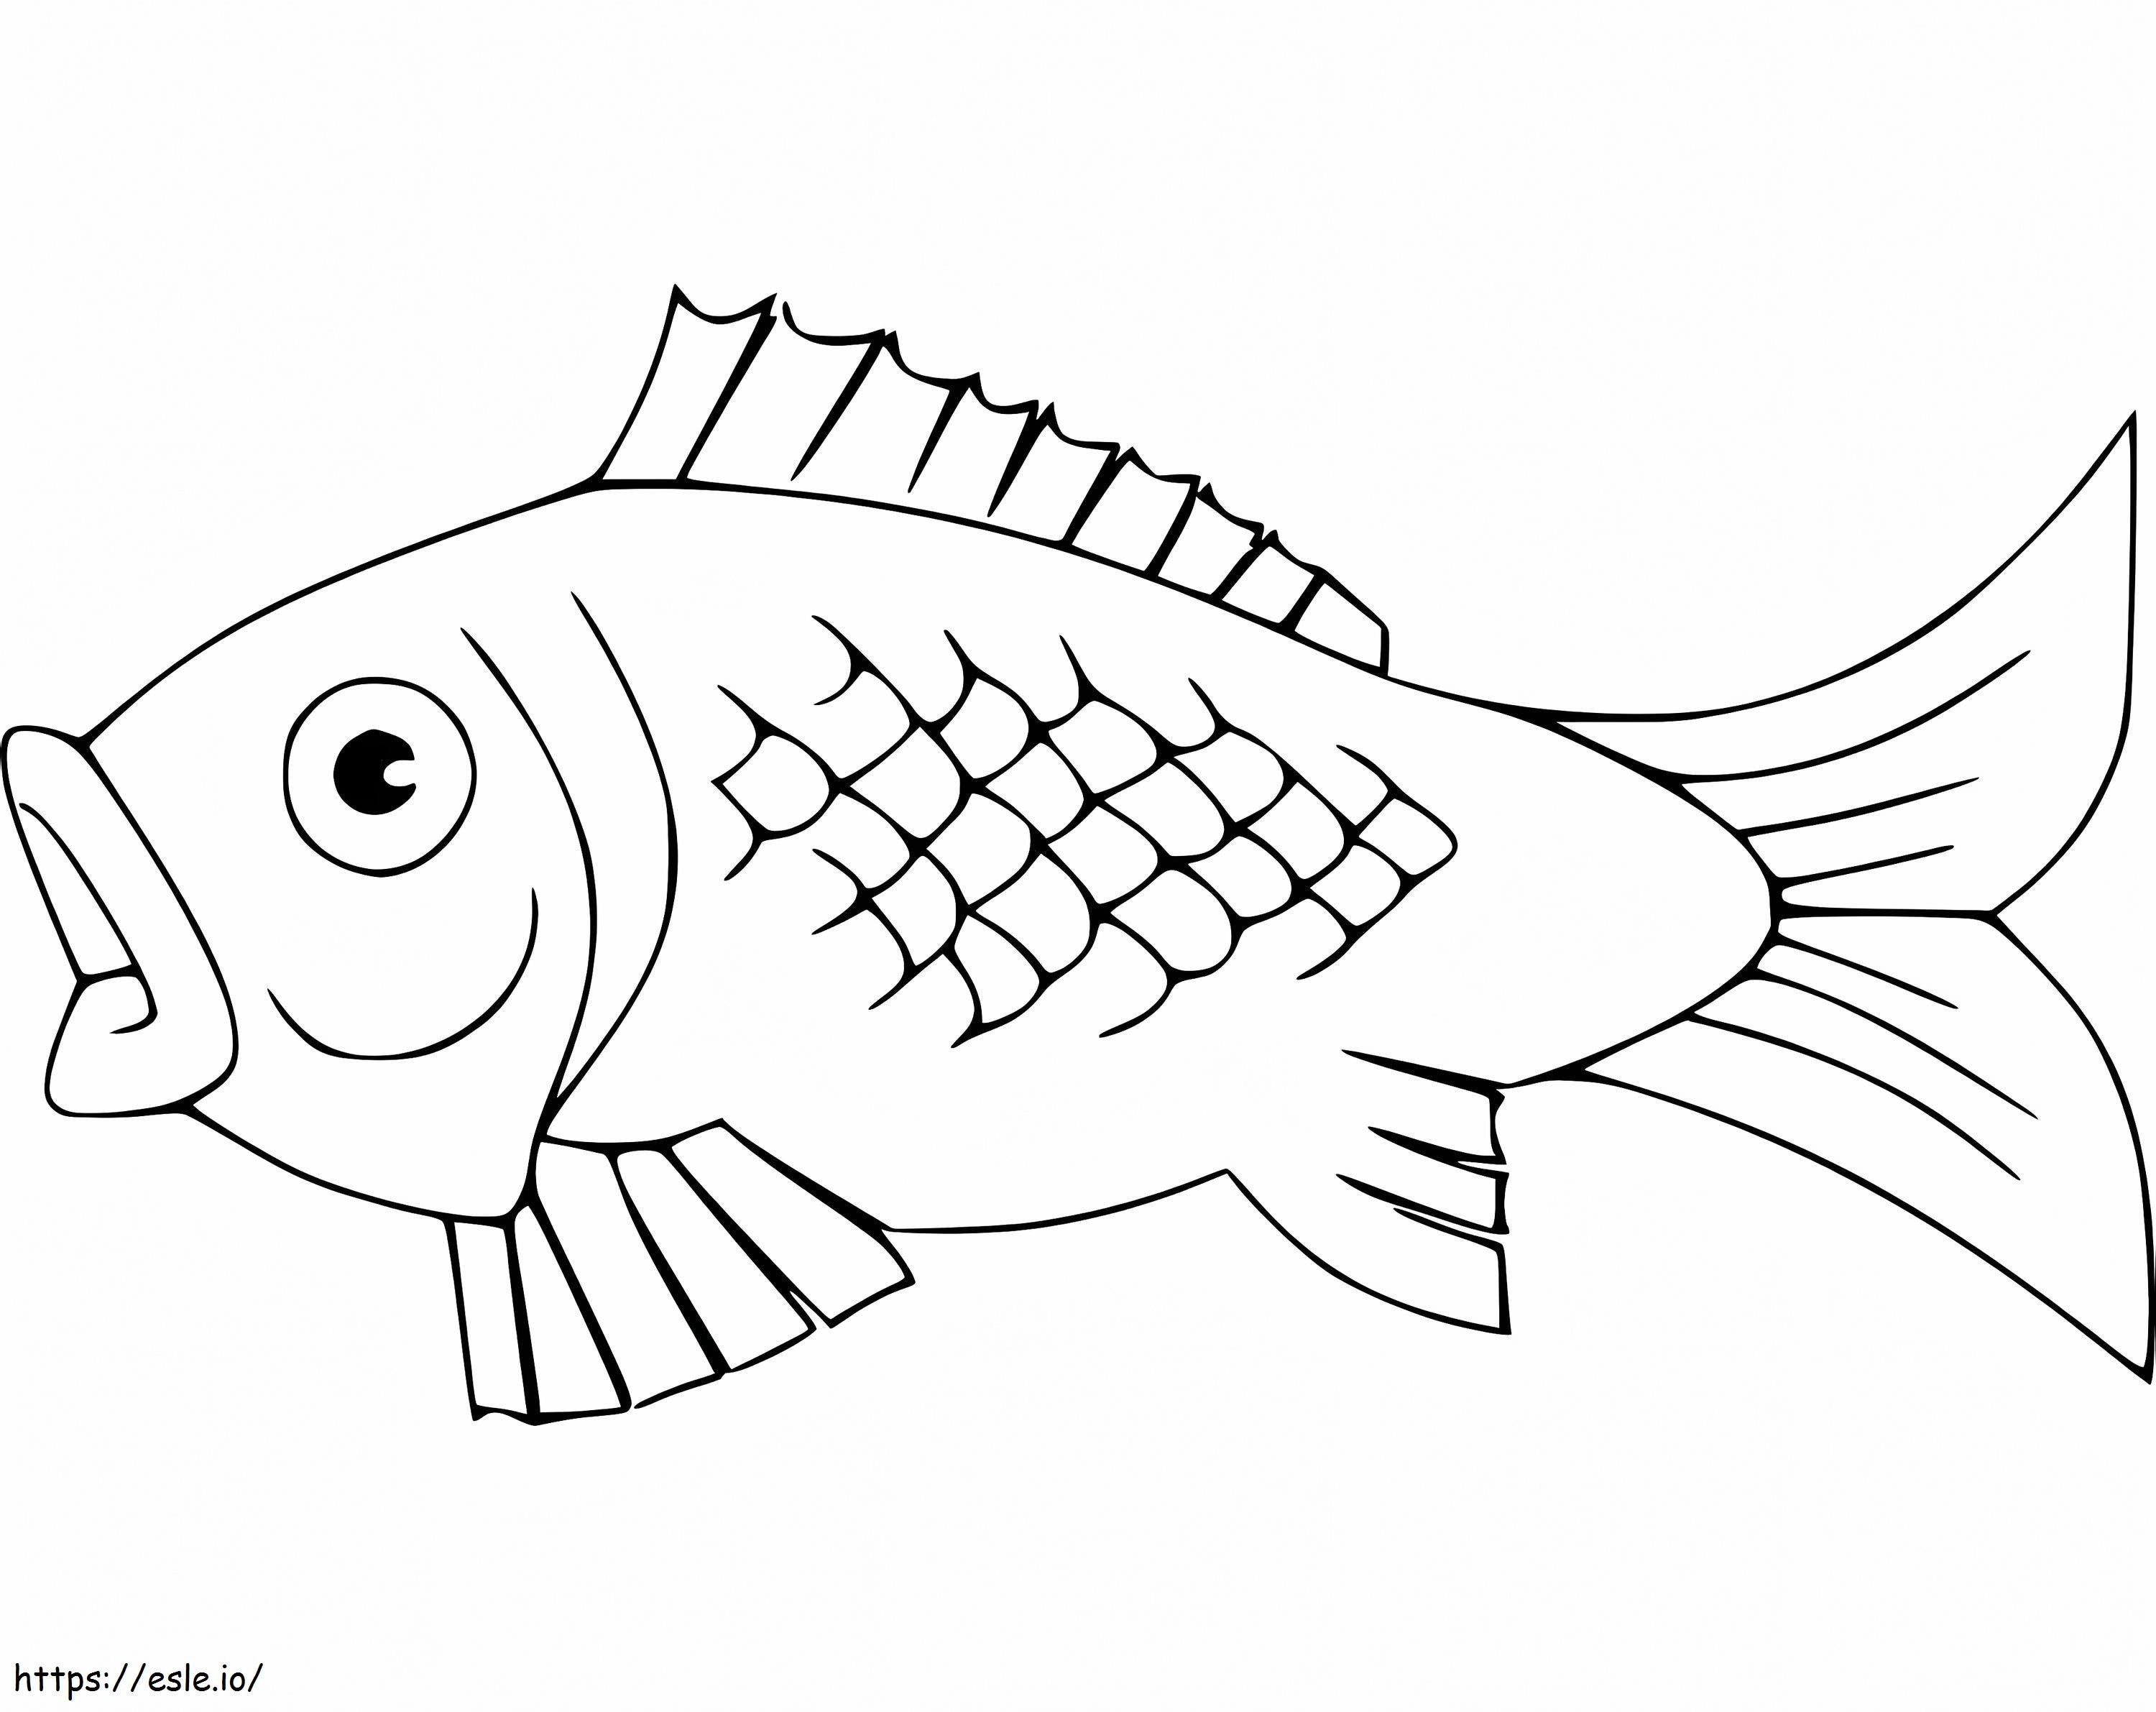 Ein Karpfenfisch ausmalbilder